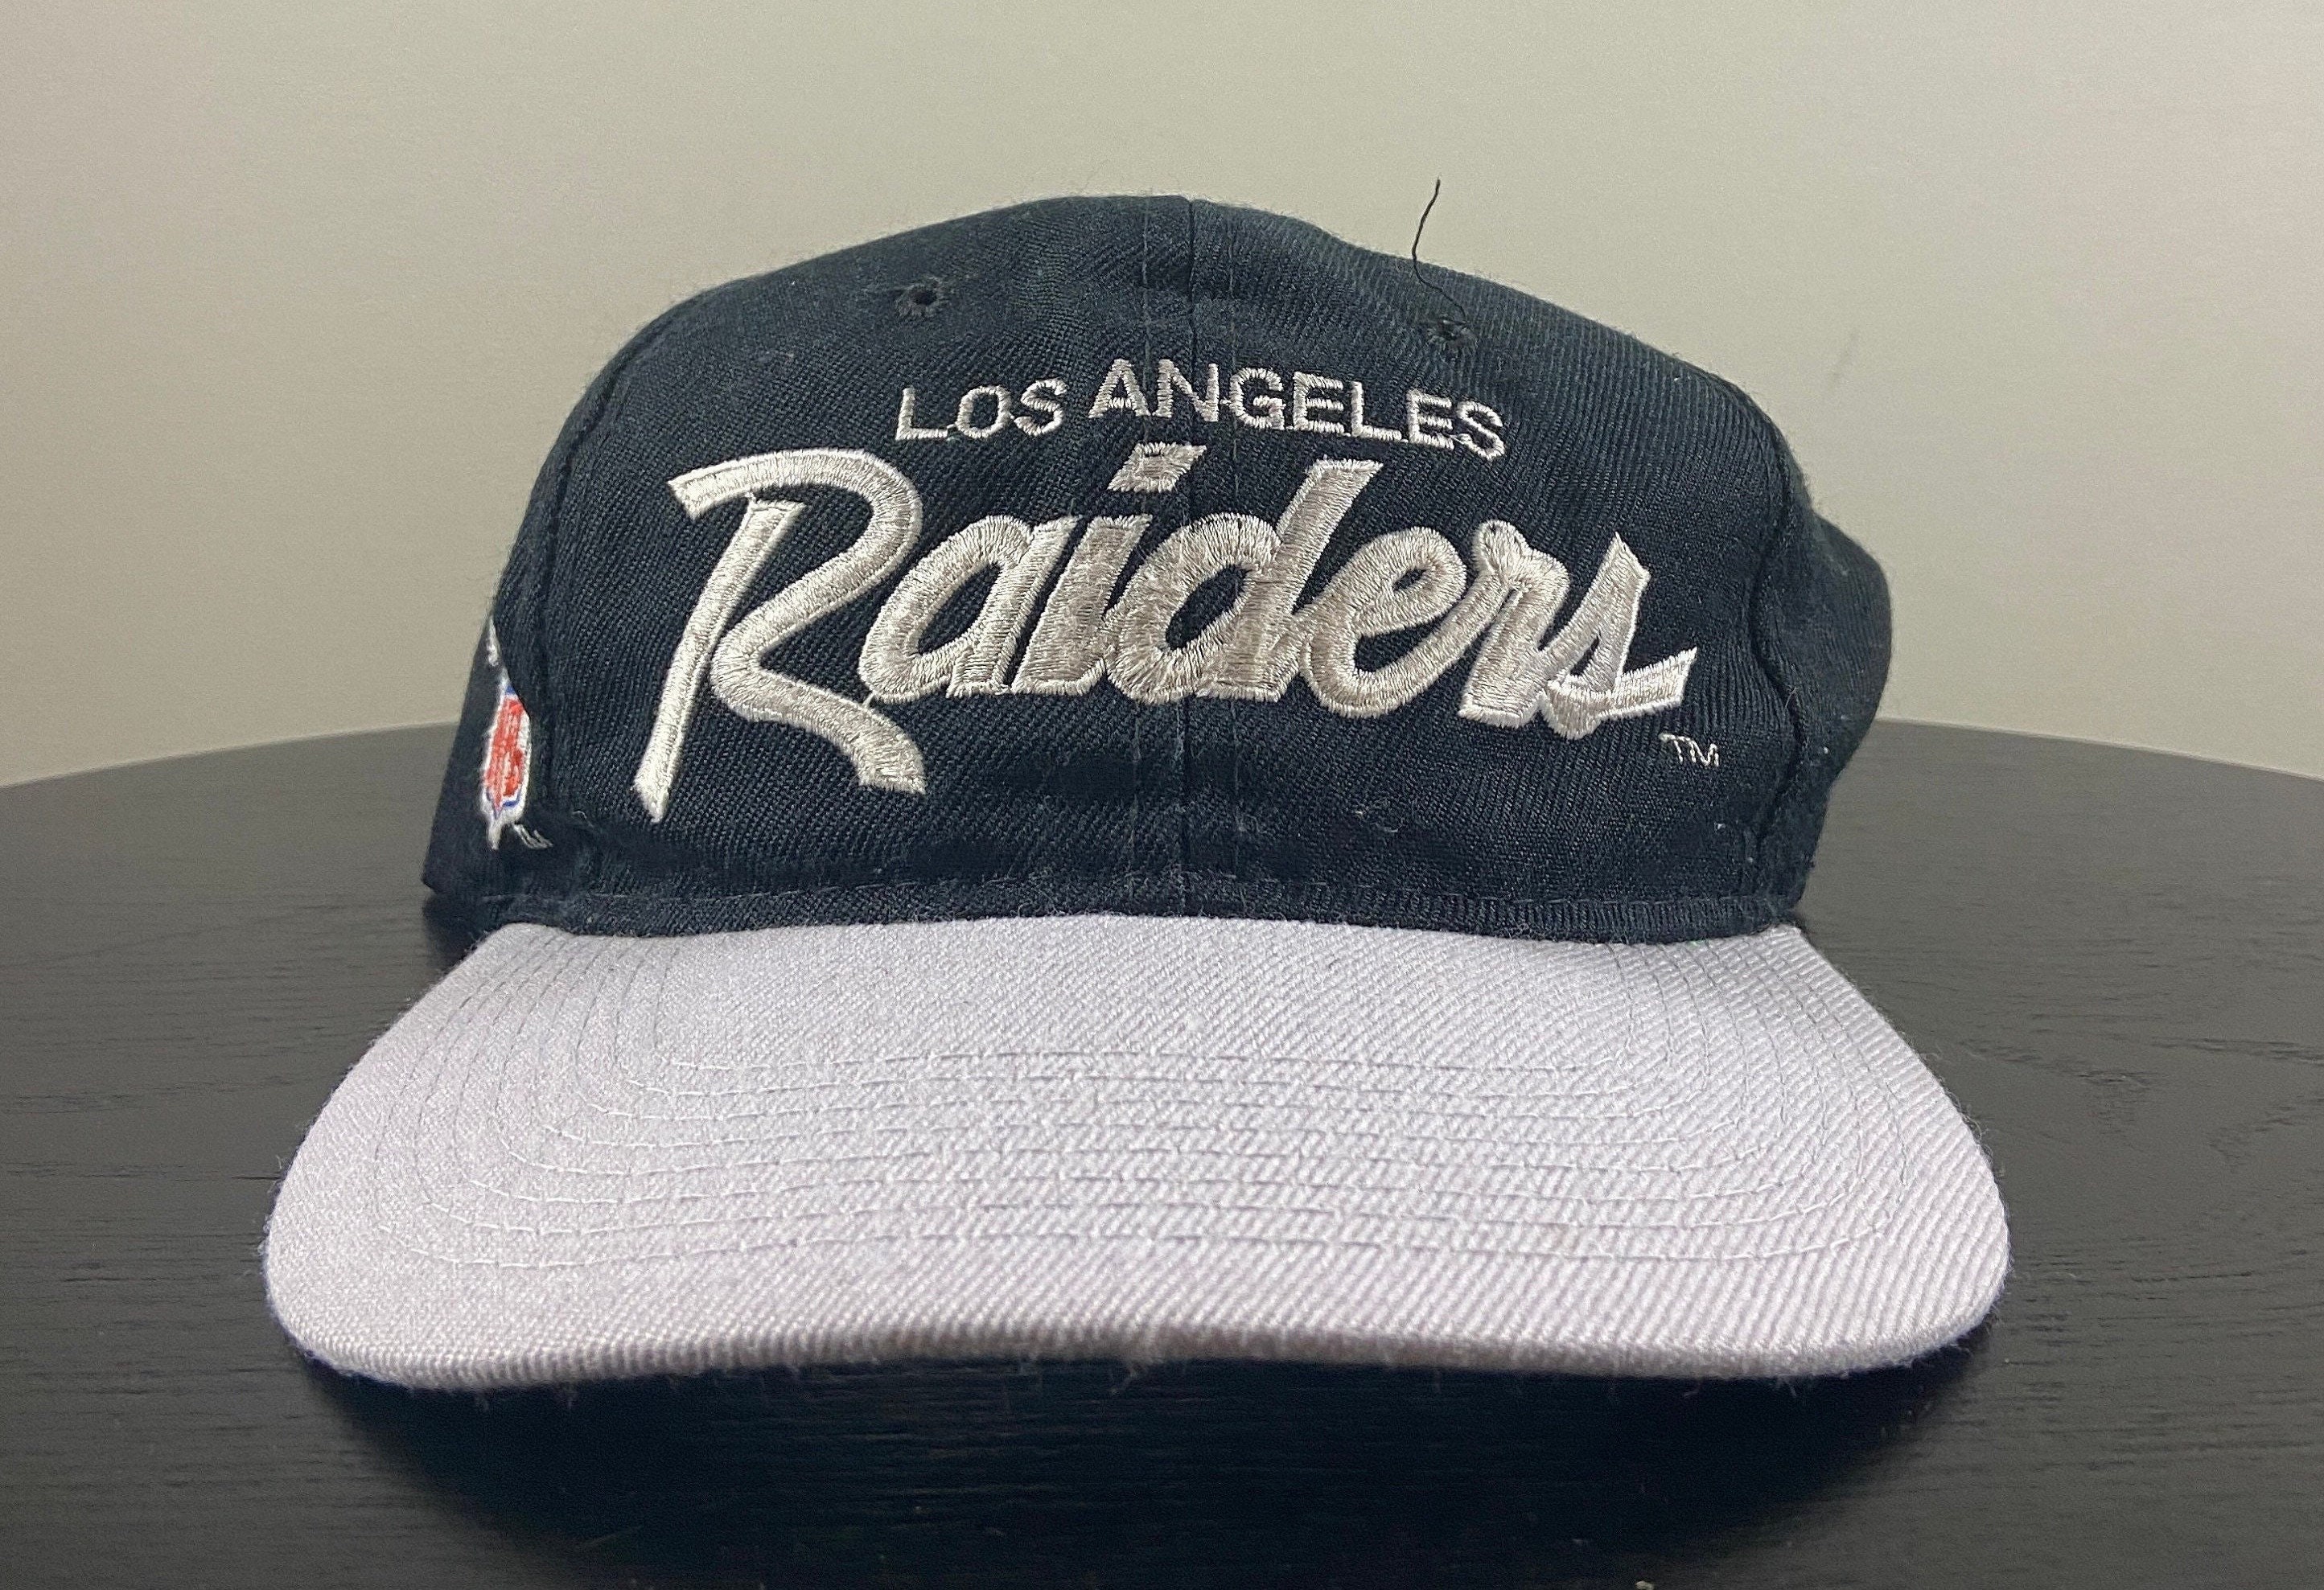 Rare 90s Los Angeles RAIDERS Snapback Raiders Cap NWA Hip Hop 1993 American Football Merch NFL Vintage Accessori Cappelli e berretti Berretti da baseball 